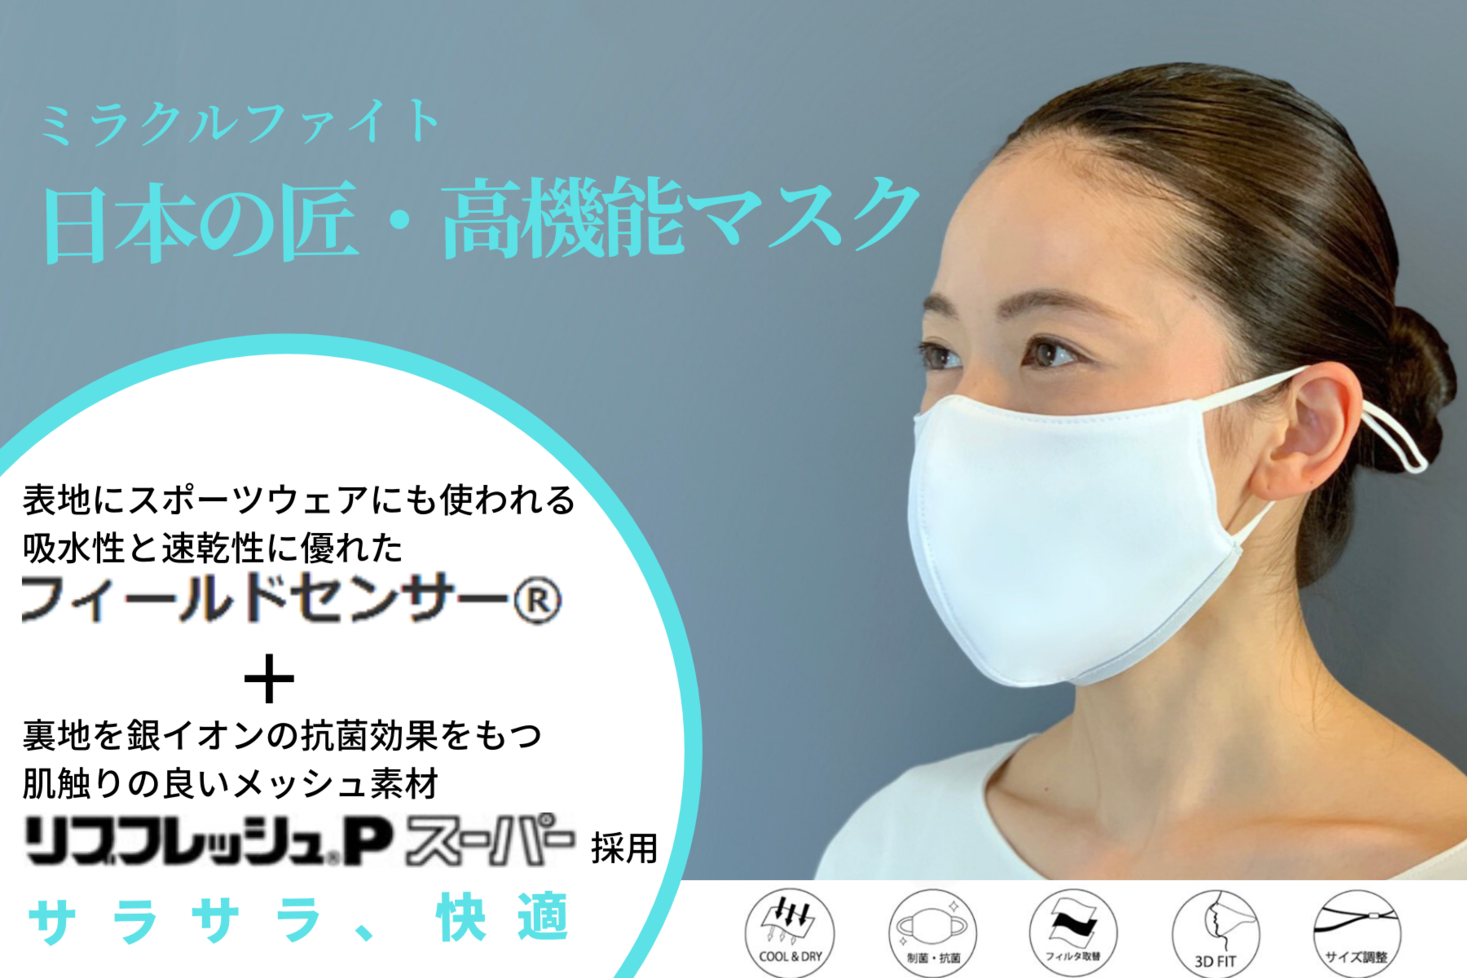 マスク フィルター 40pcs マスクではありません 5層加工 真空パック 13時まで即日発送 日本郵便クリックポスト 素晴らしい外見